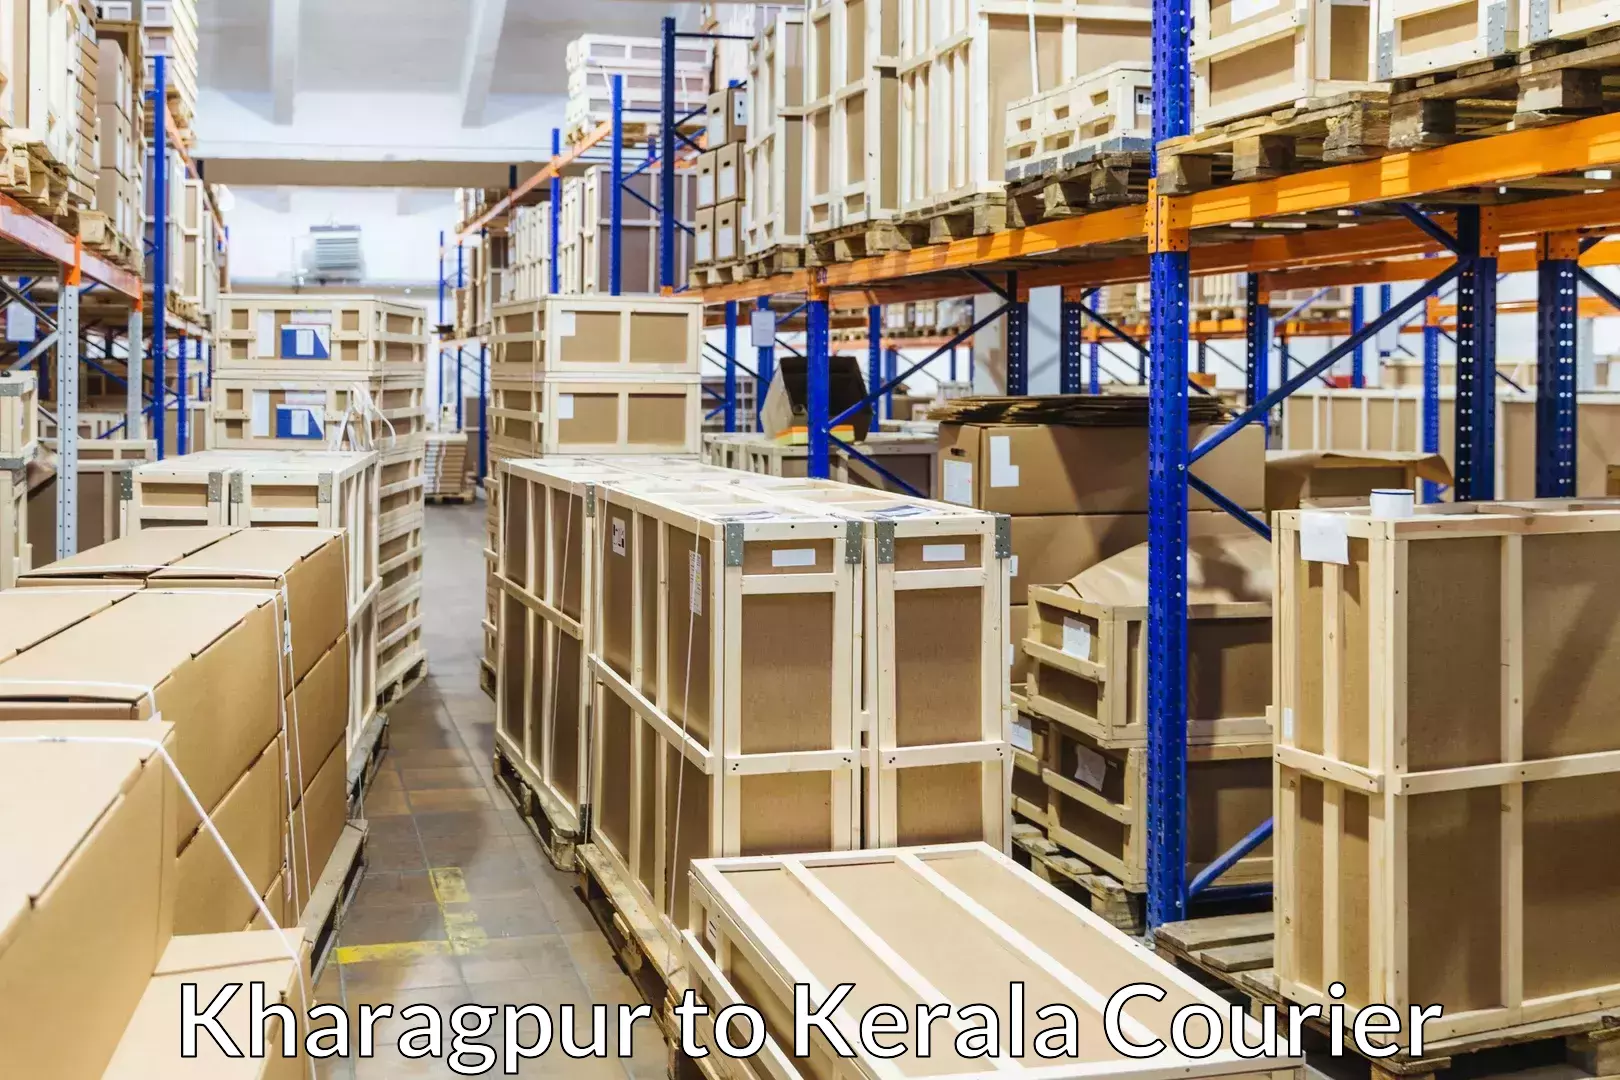 Furniture transport specialists Kharagpur to Kalpetta